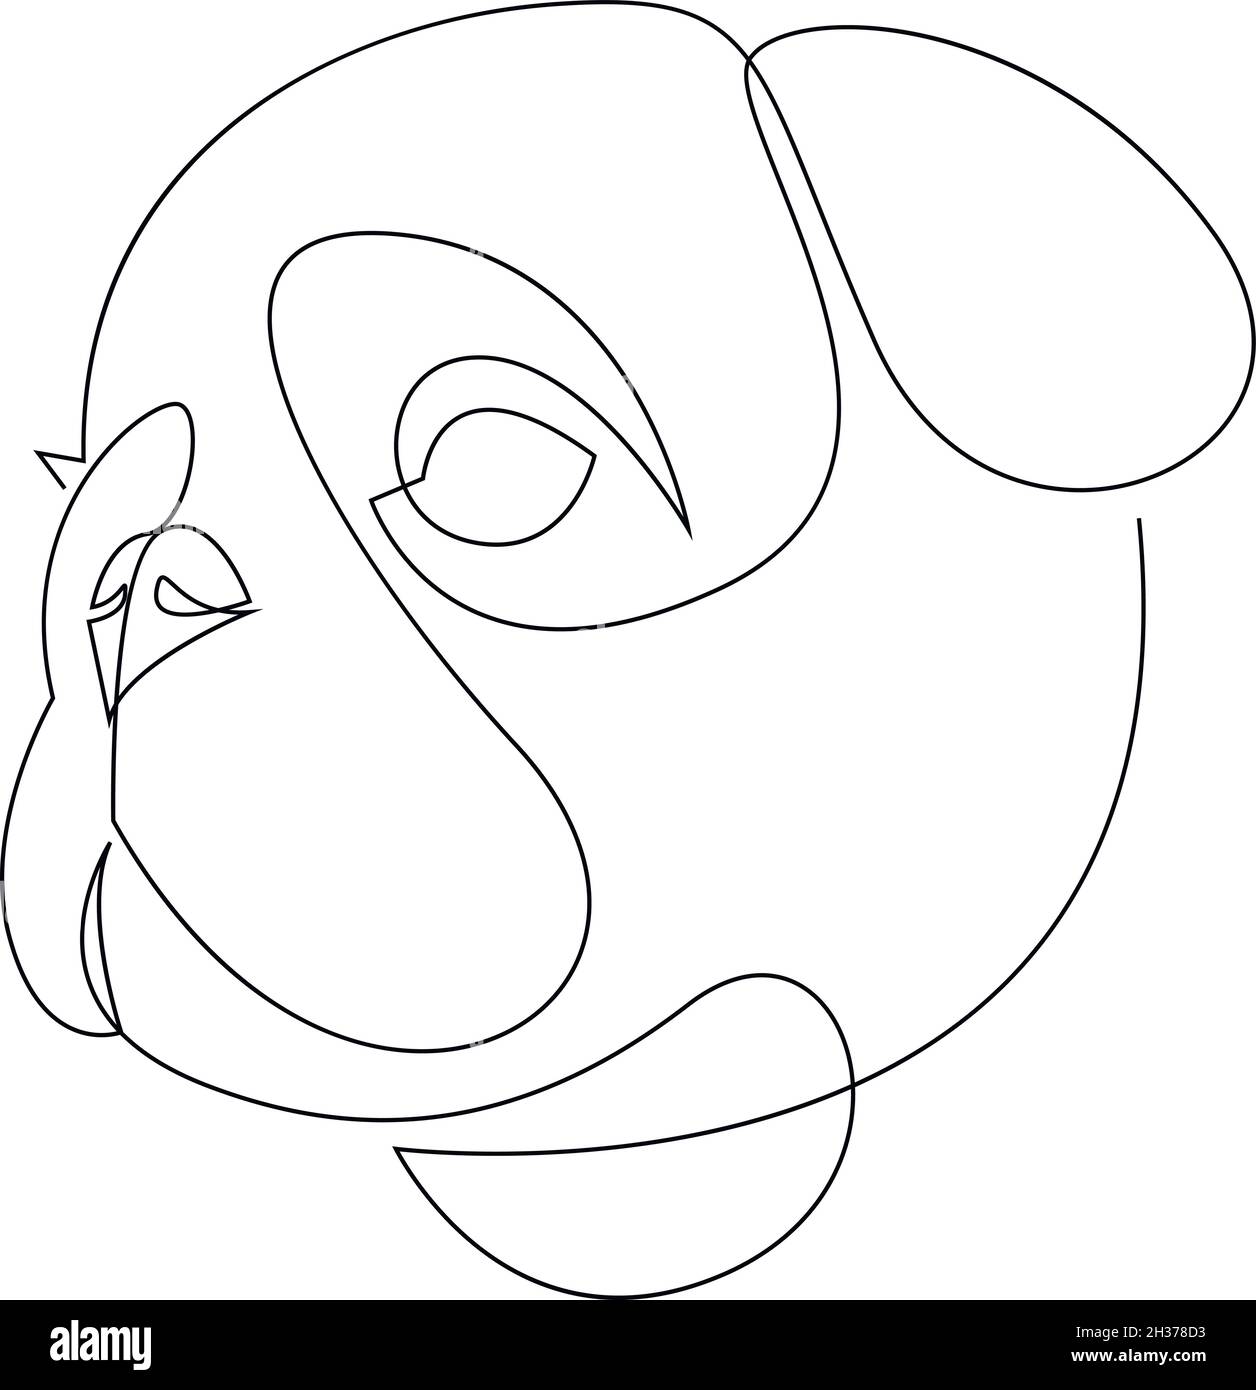 Une ligne de dessin unique continue art doodle animal, animal, chien, chien pug, chien.Illustration plate isolée dessiner à la main un contour sur fond blanc Illustration de Vecteur